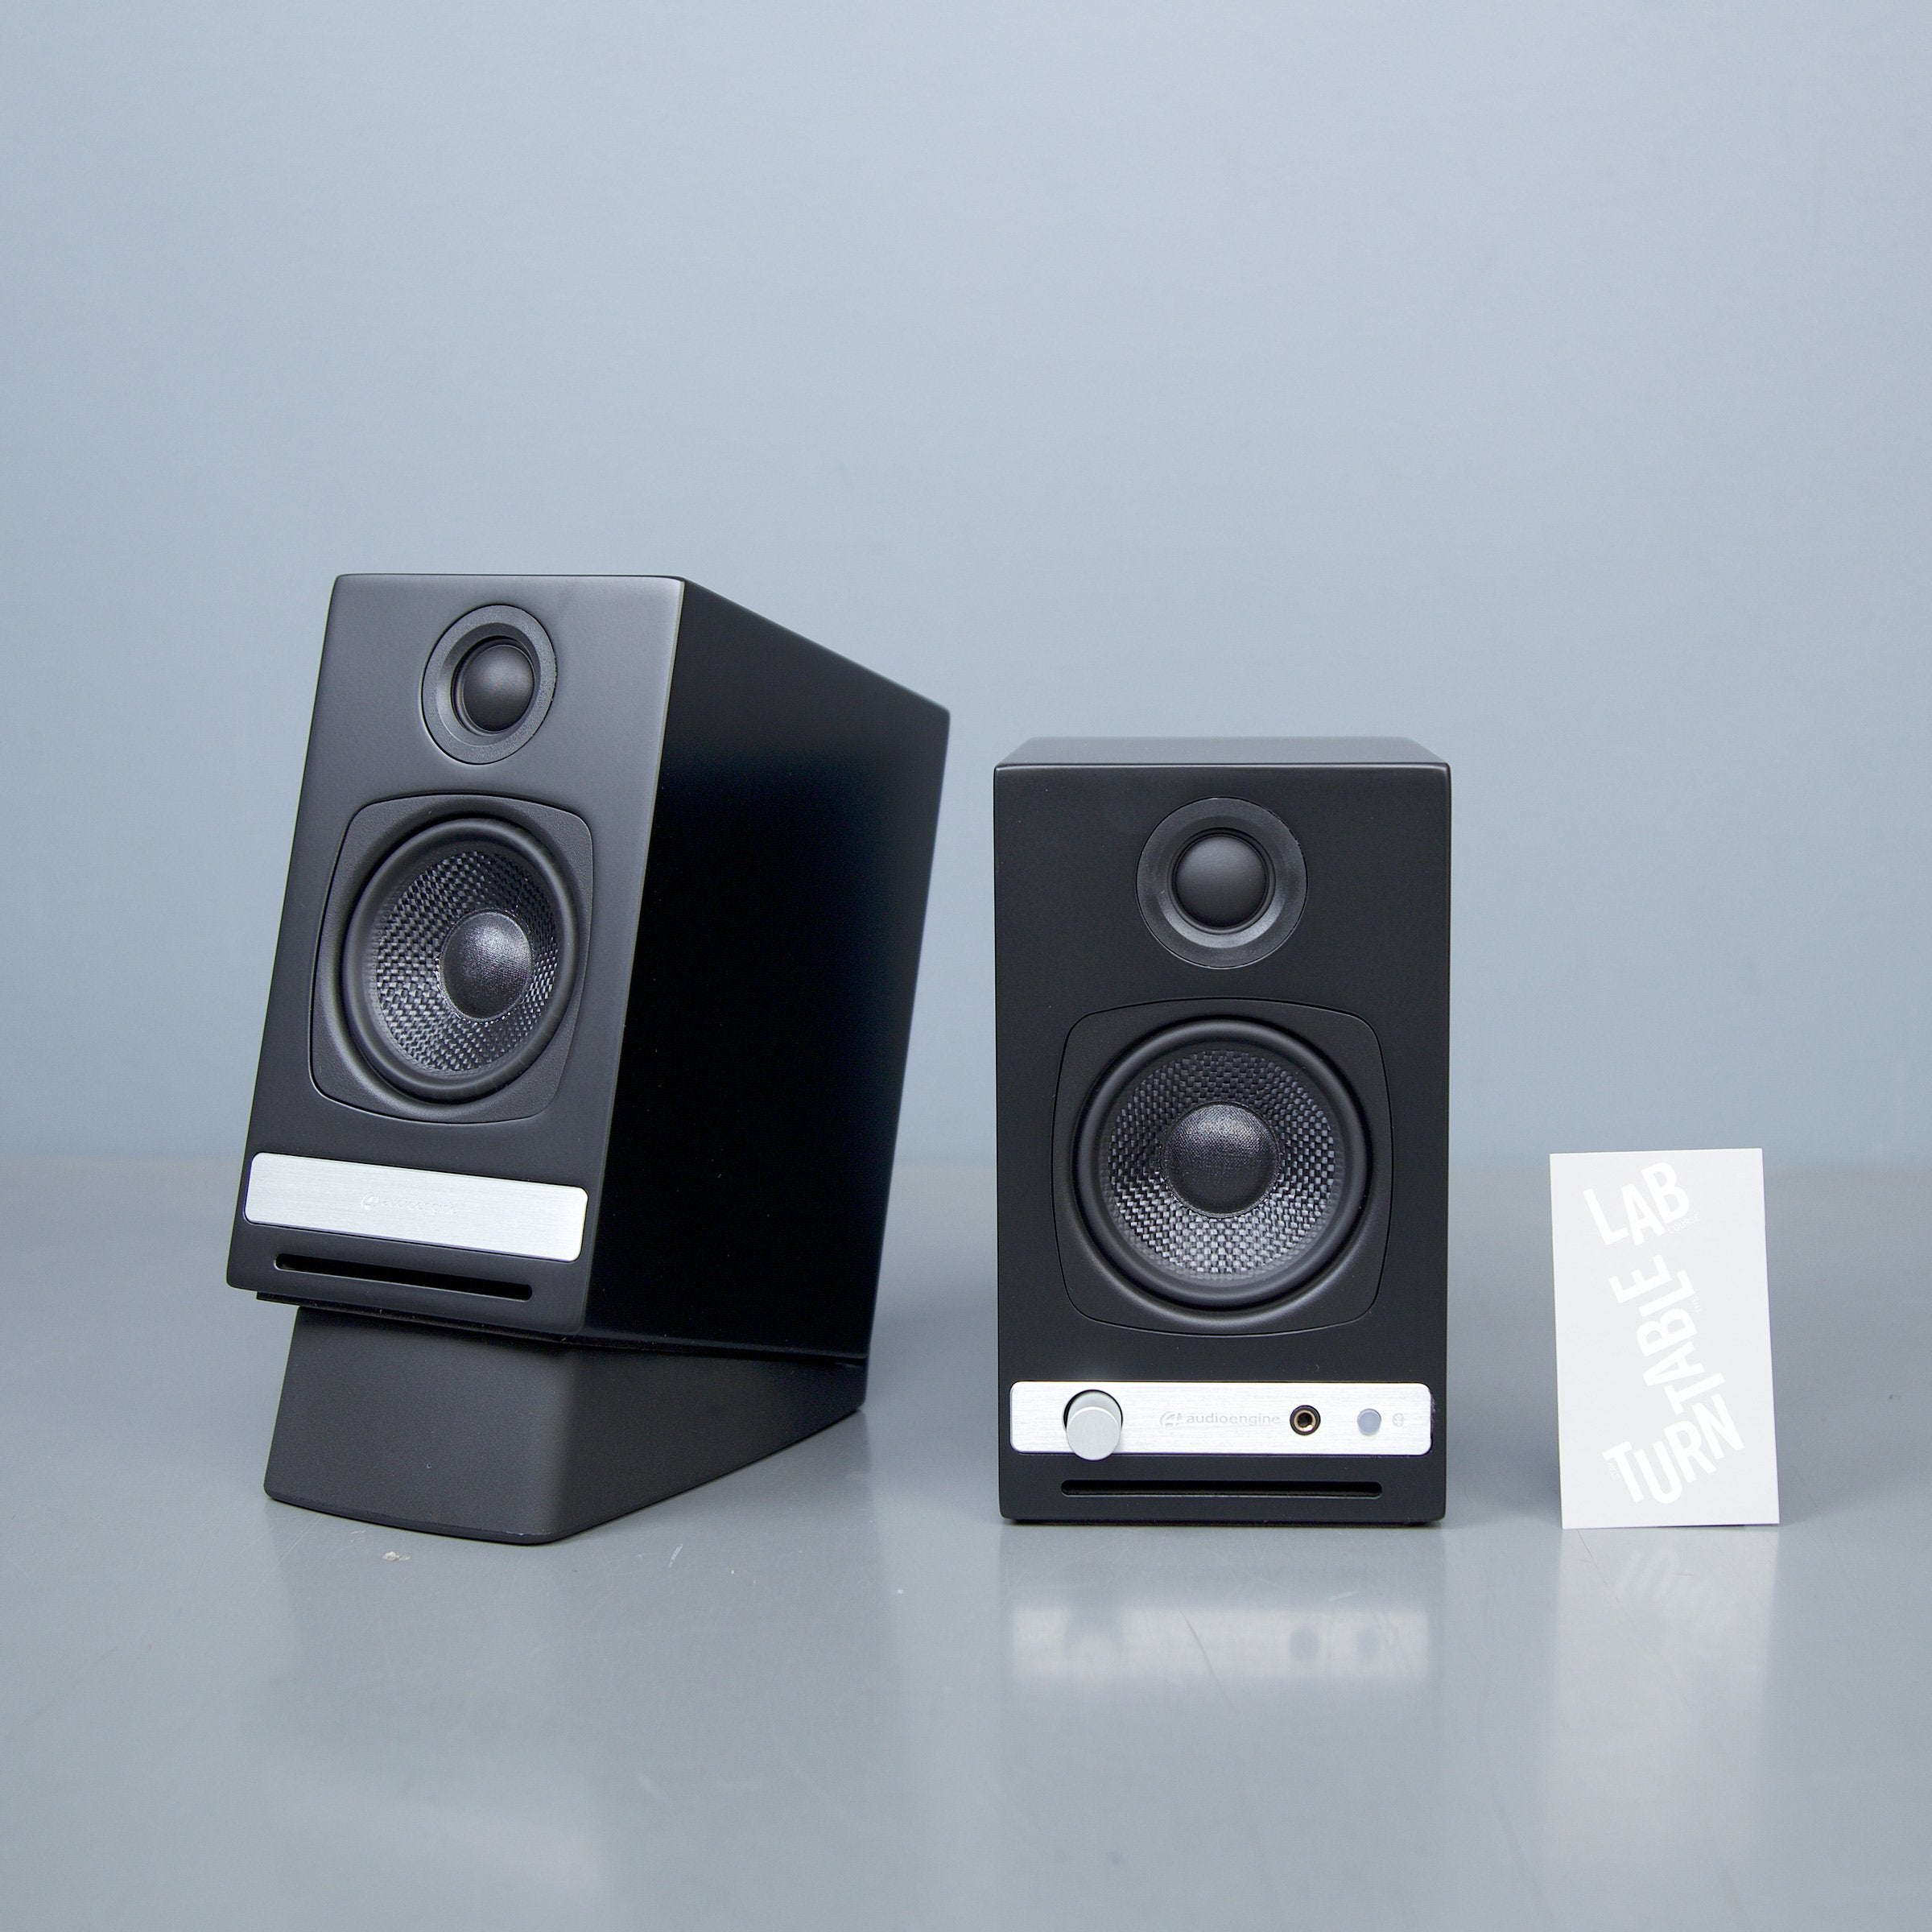 Audioengine: HD3 Powered Bluetooth Speakers - Black